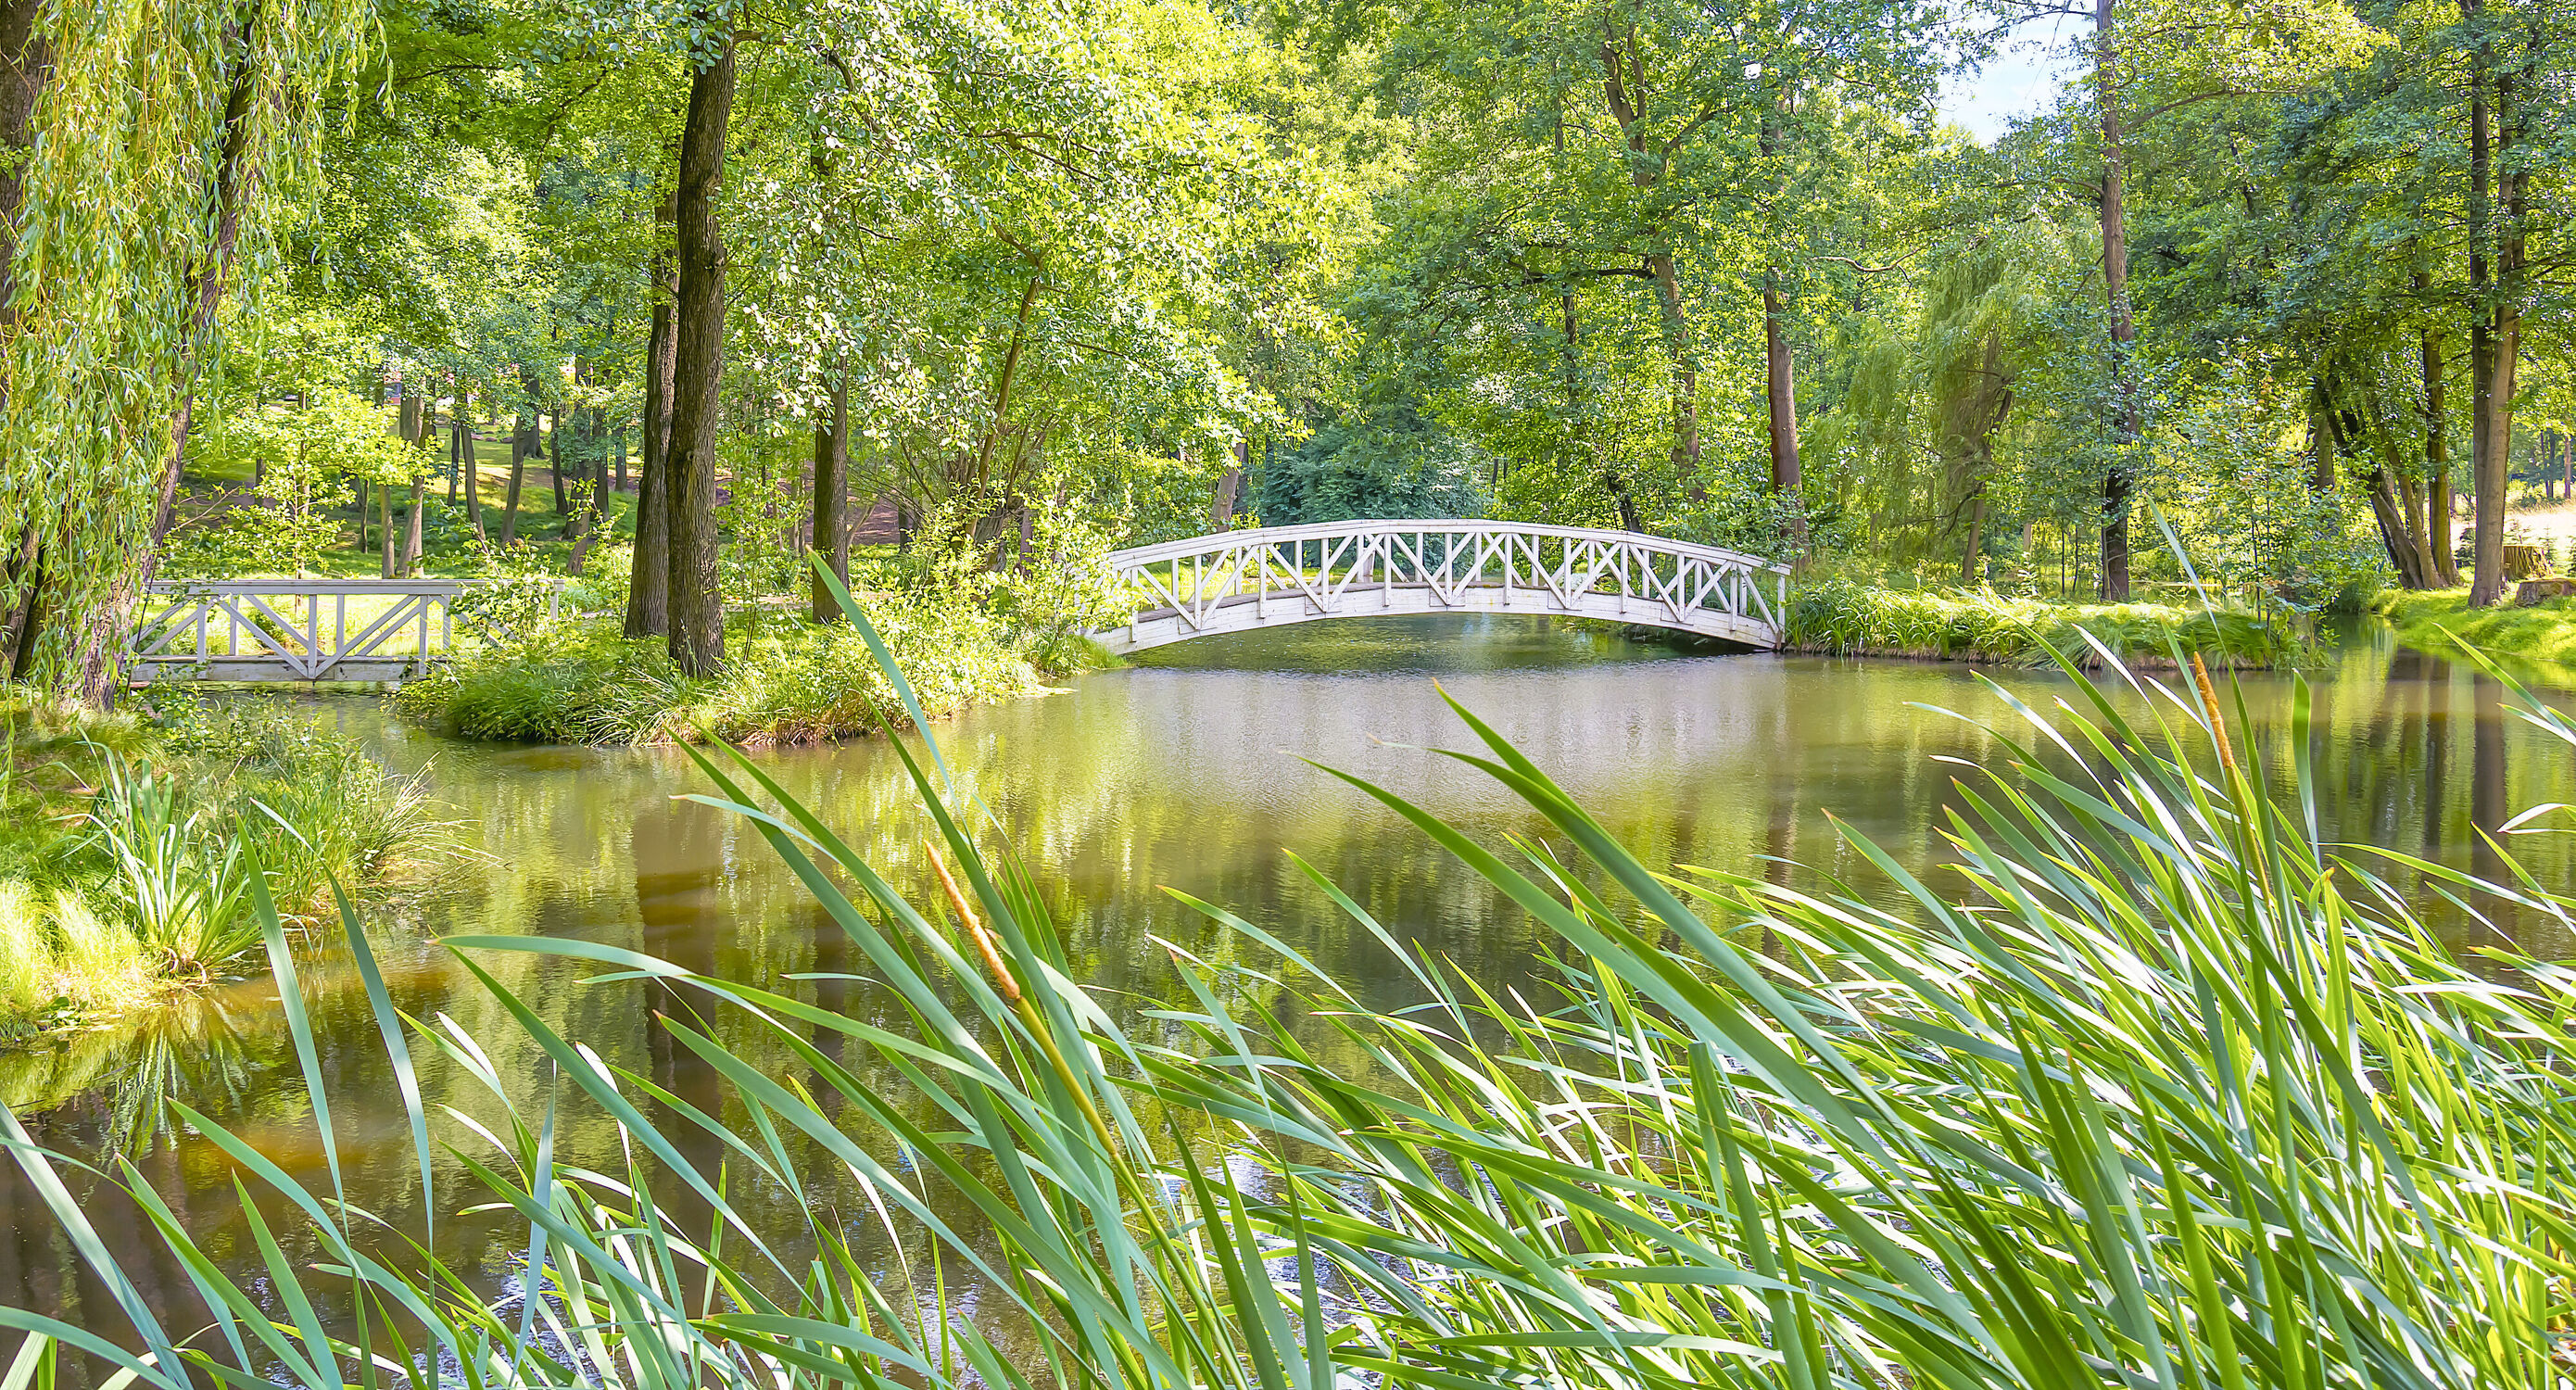 Bild mit Natur, Seen, Parks, Laubbäume, Brücken und Bögen, Gewässer im Wald, Holzbrücke